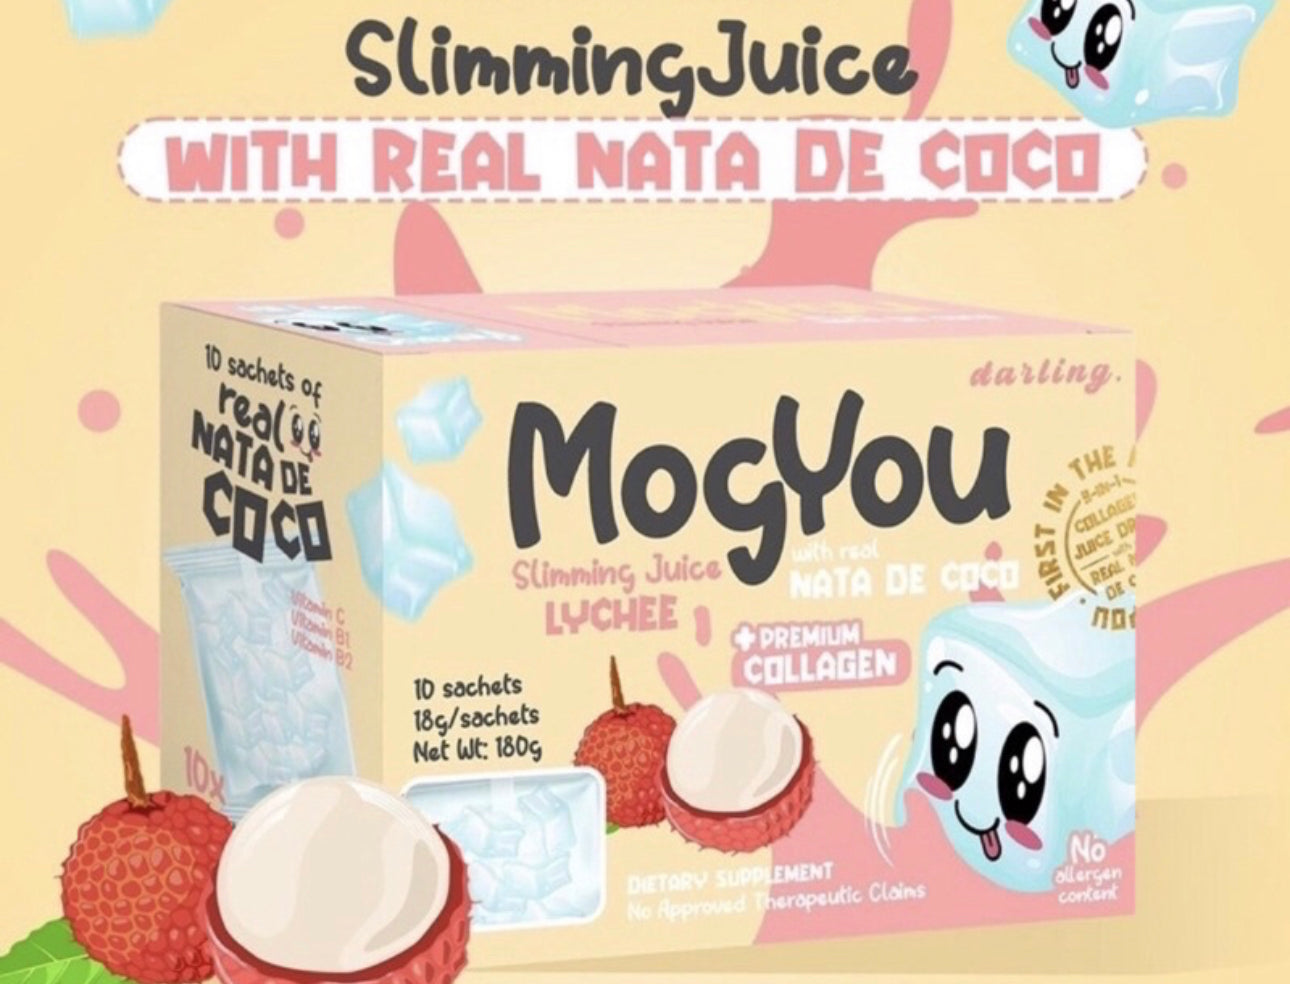 Darling Mogyou Slimming Juice Premium lychee